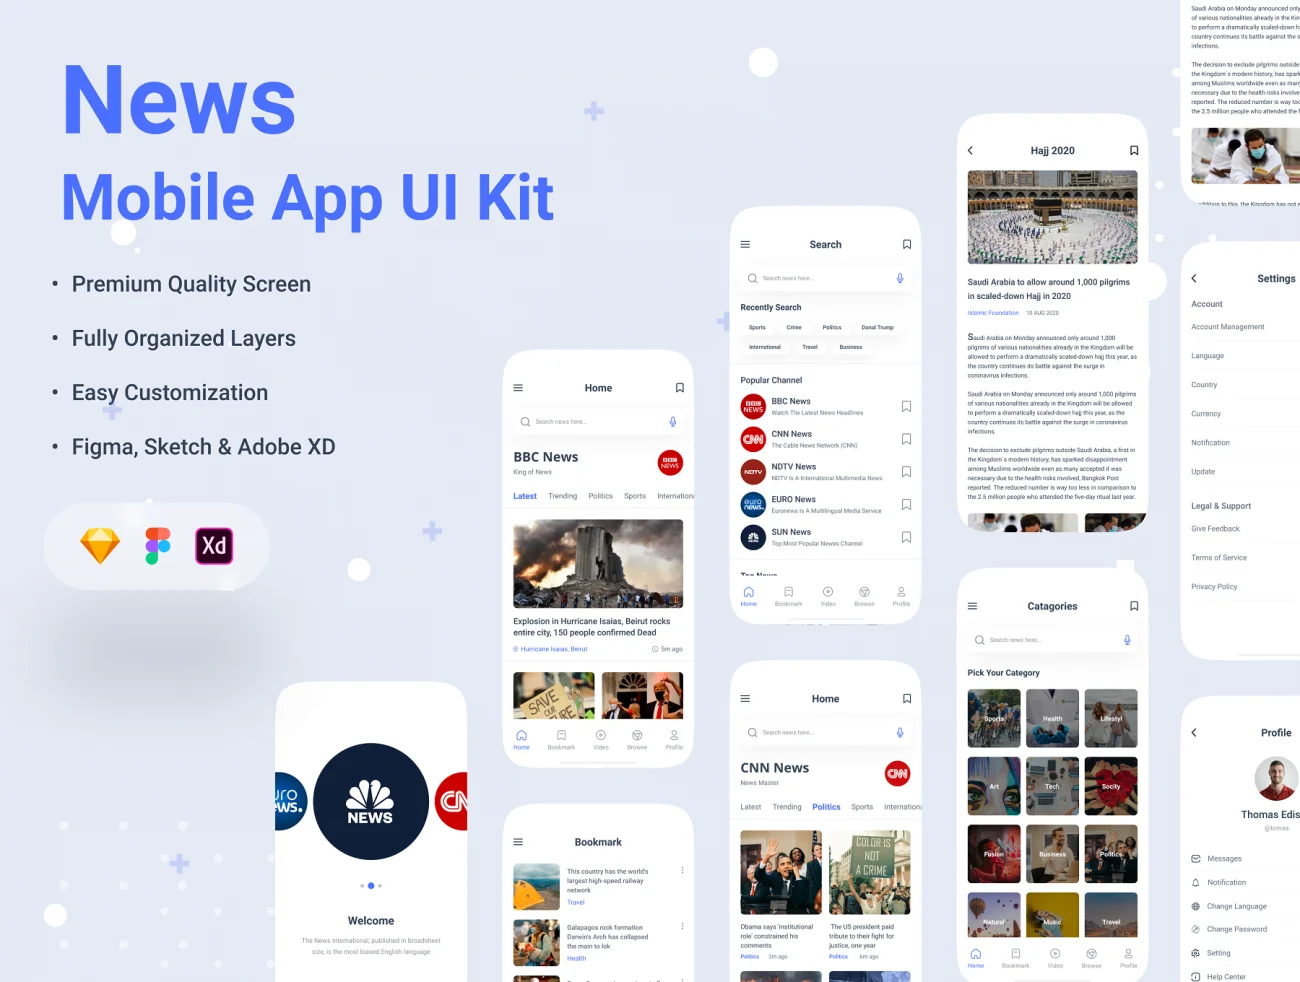 35屏新闻应用UI设计套件 News App UI kit - Figma .sketch .figma .xd-UI/UX、ui套件、主页、列表、卡片式、图表、应用、海报、社交、表单-到位啦UI